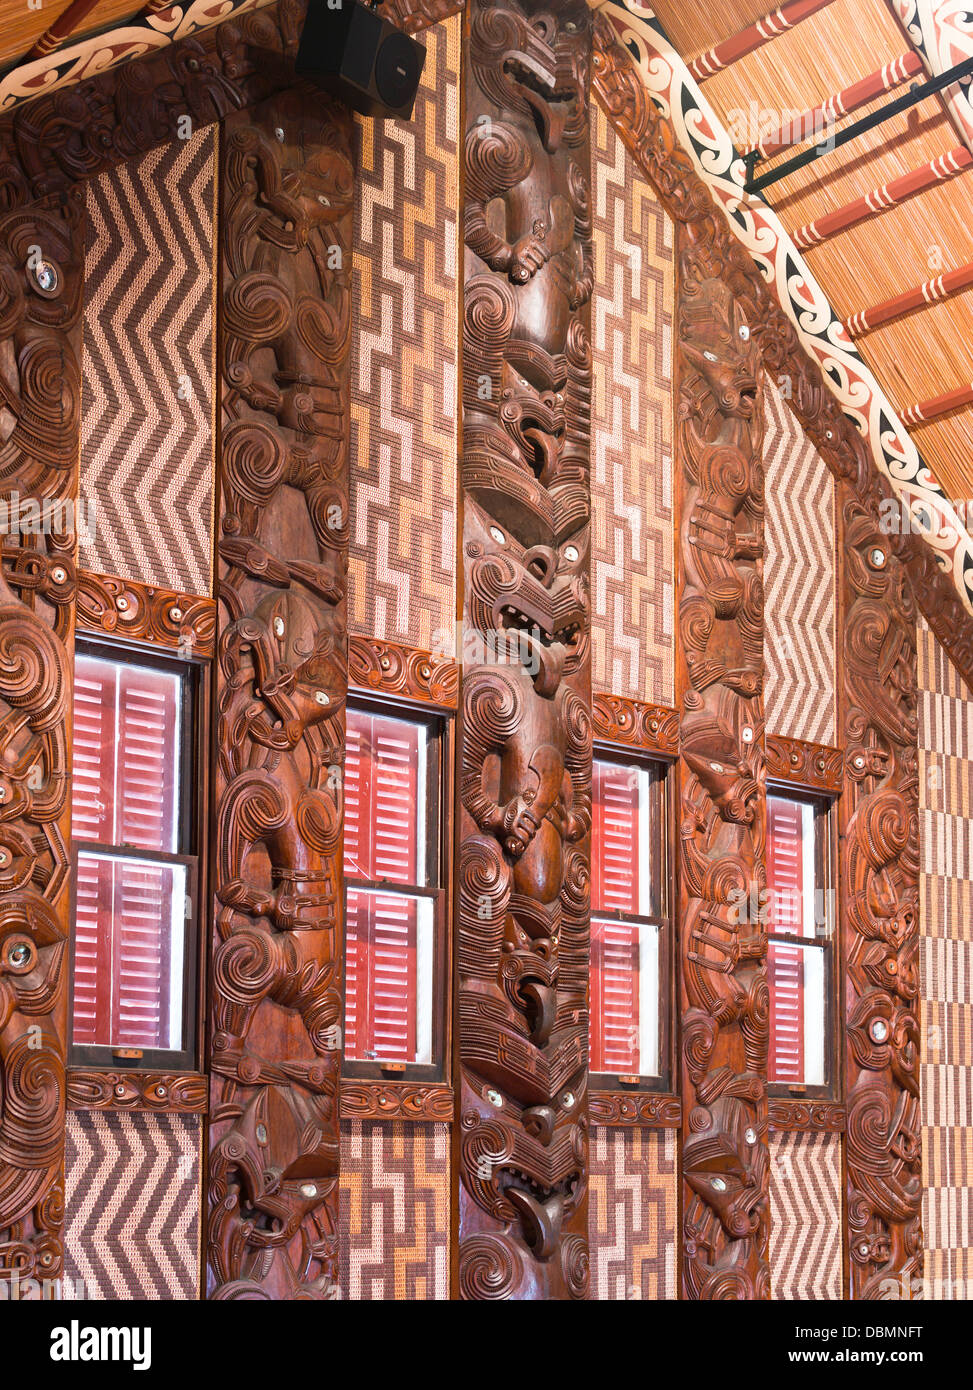 Site du Traité de Waitangi dh BAY OF ISLANDS NOUVELLE ZÉLANDE Whare Runanga Maori meeting house intérieur sculpture sculptures culture marae Banque D'Images